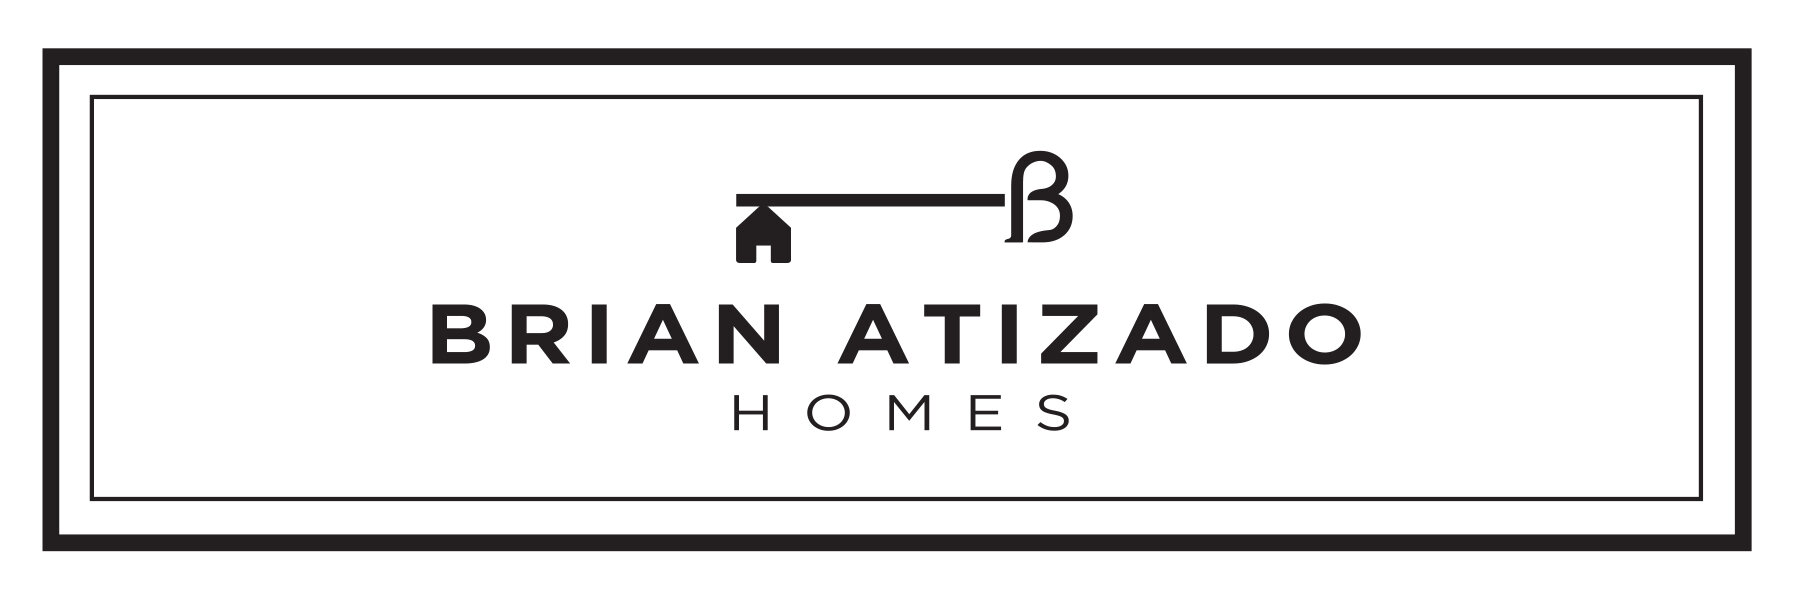 Brian Atizado Homes logo